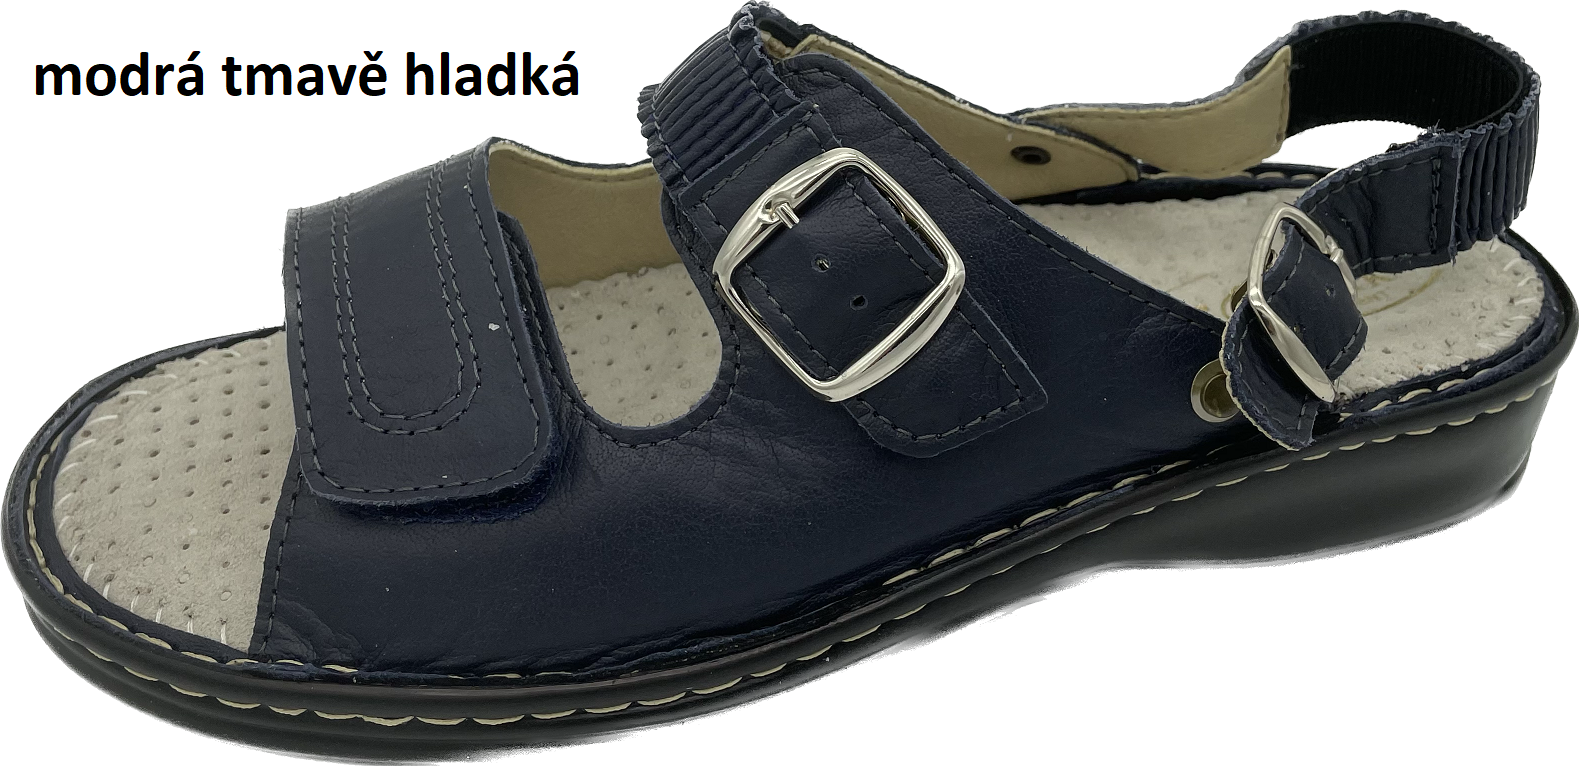 Boty Hanák vzor 305 P - černá podešev Barva usně: modrá tmavě hladká, Velikosti obuvi: 36